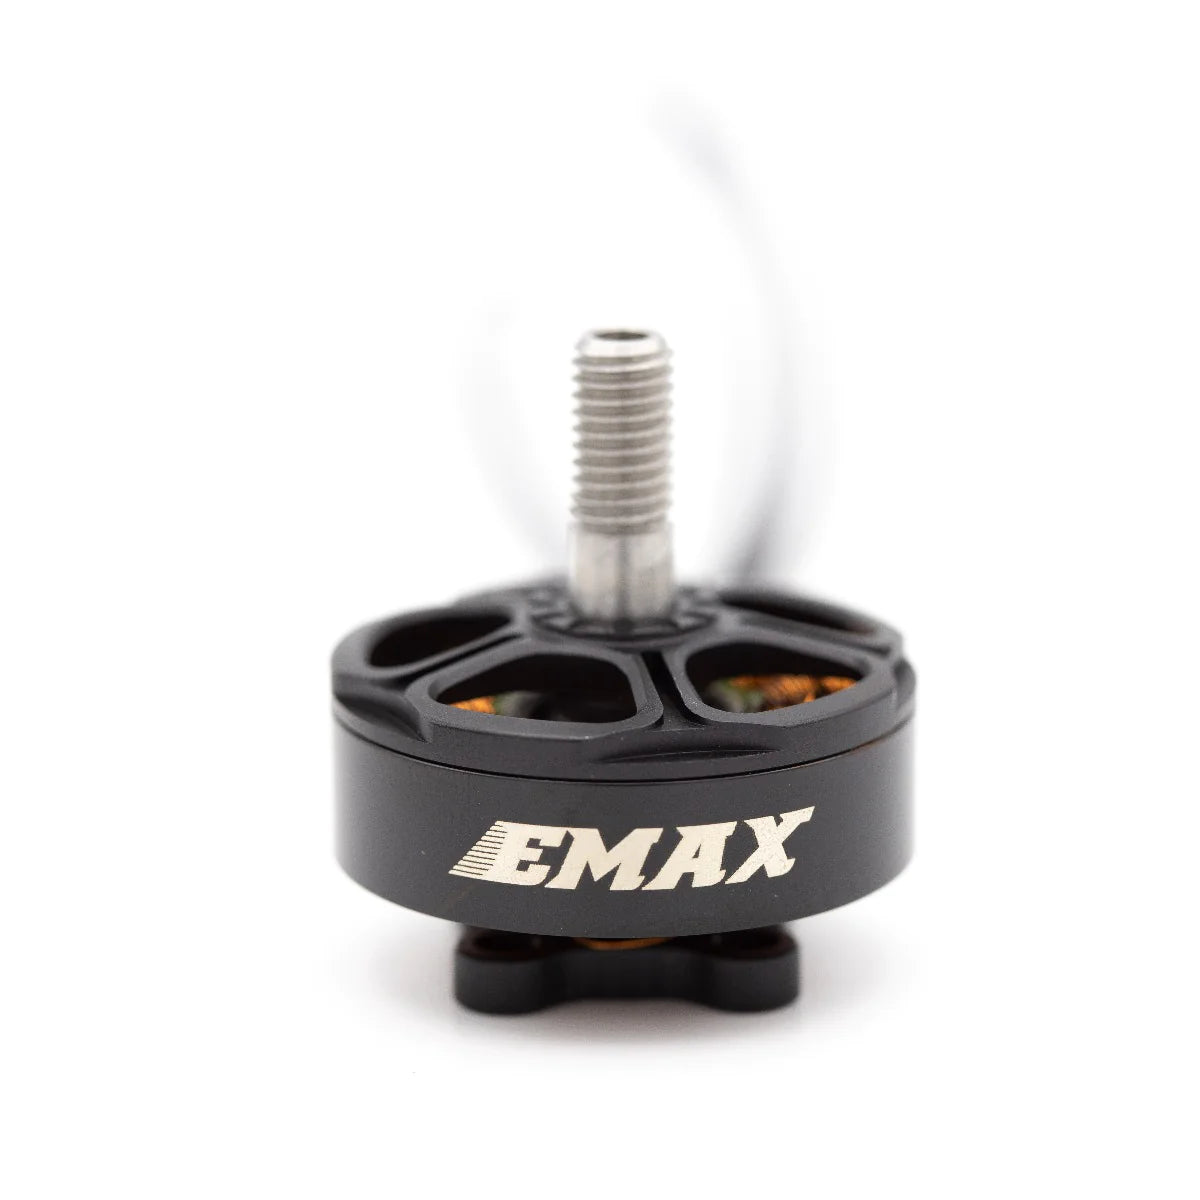 EMAX Free Styles 2306 1700KV